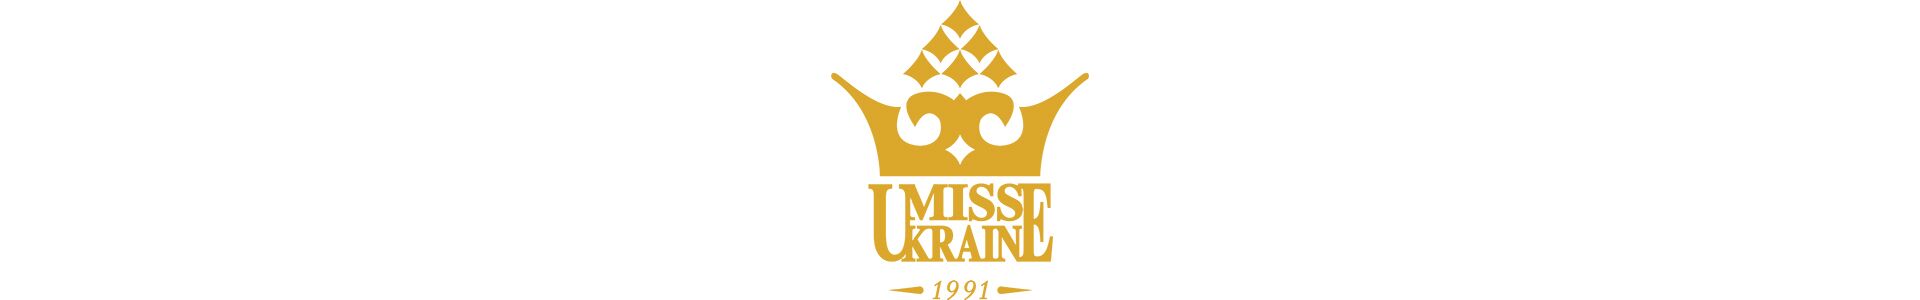 Голосування за Міс Україна Земля 2016 Олену Бєлову